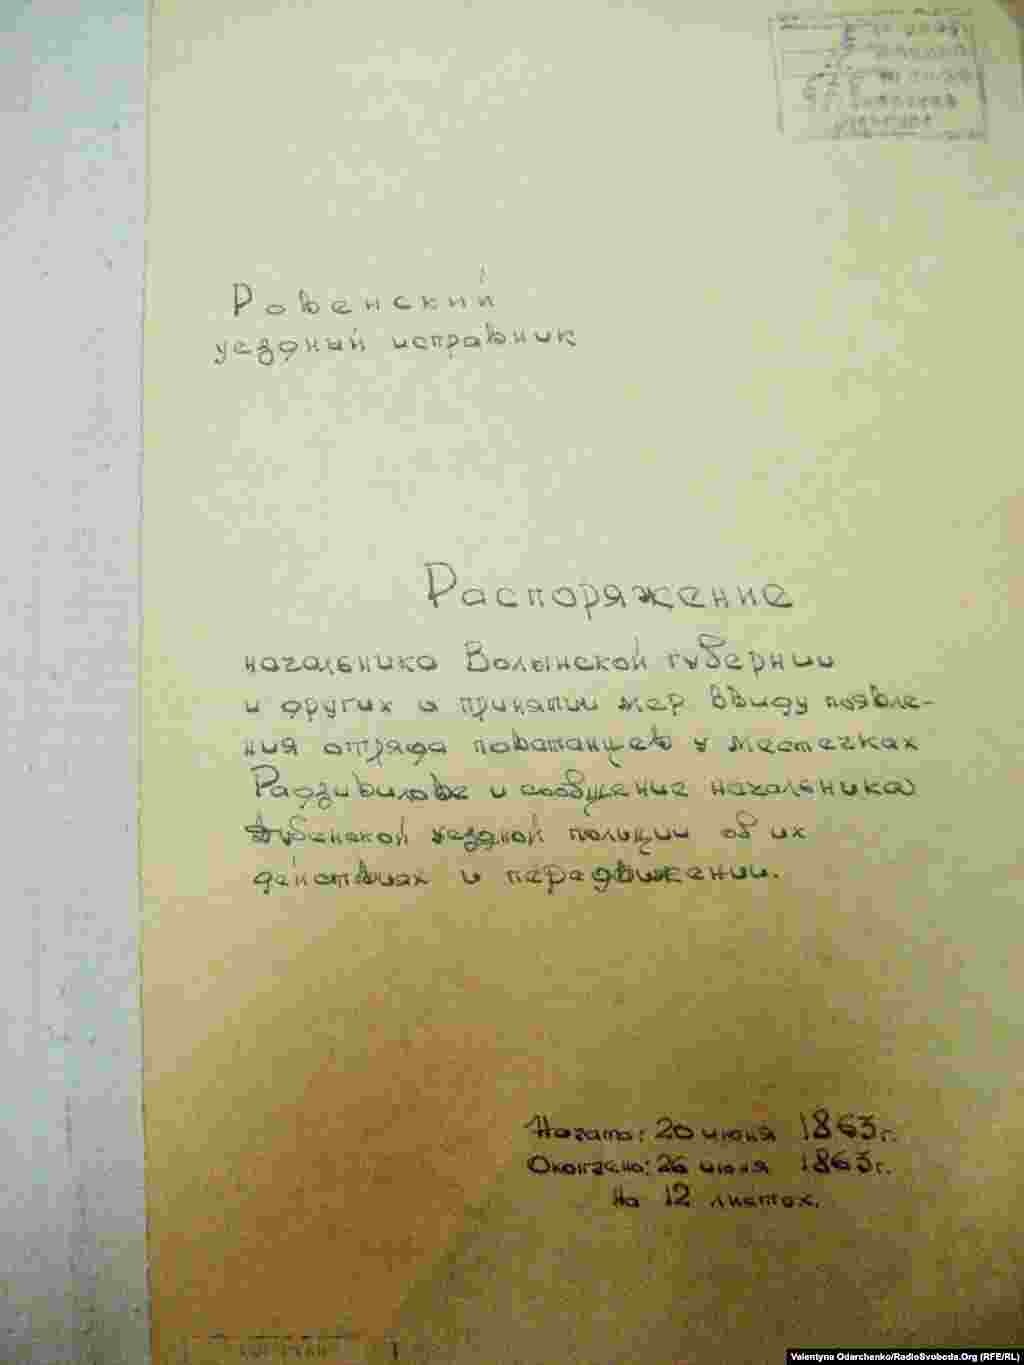 Розпорядження начальника Волинської губернії про вжиття заходів у зв&rsquo;язку з появою загону повстанців у Радивилові.